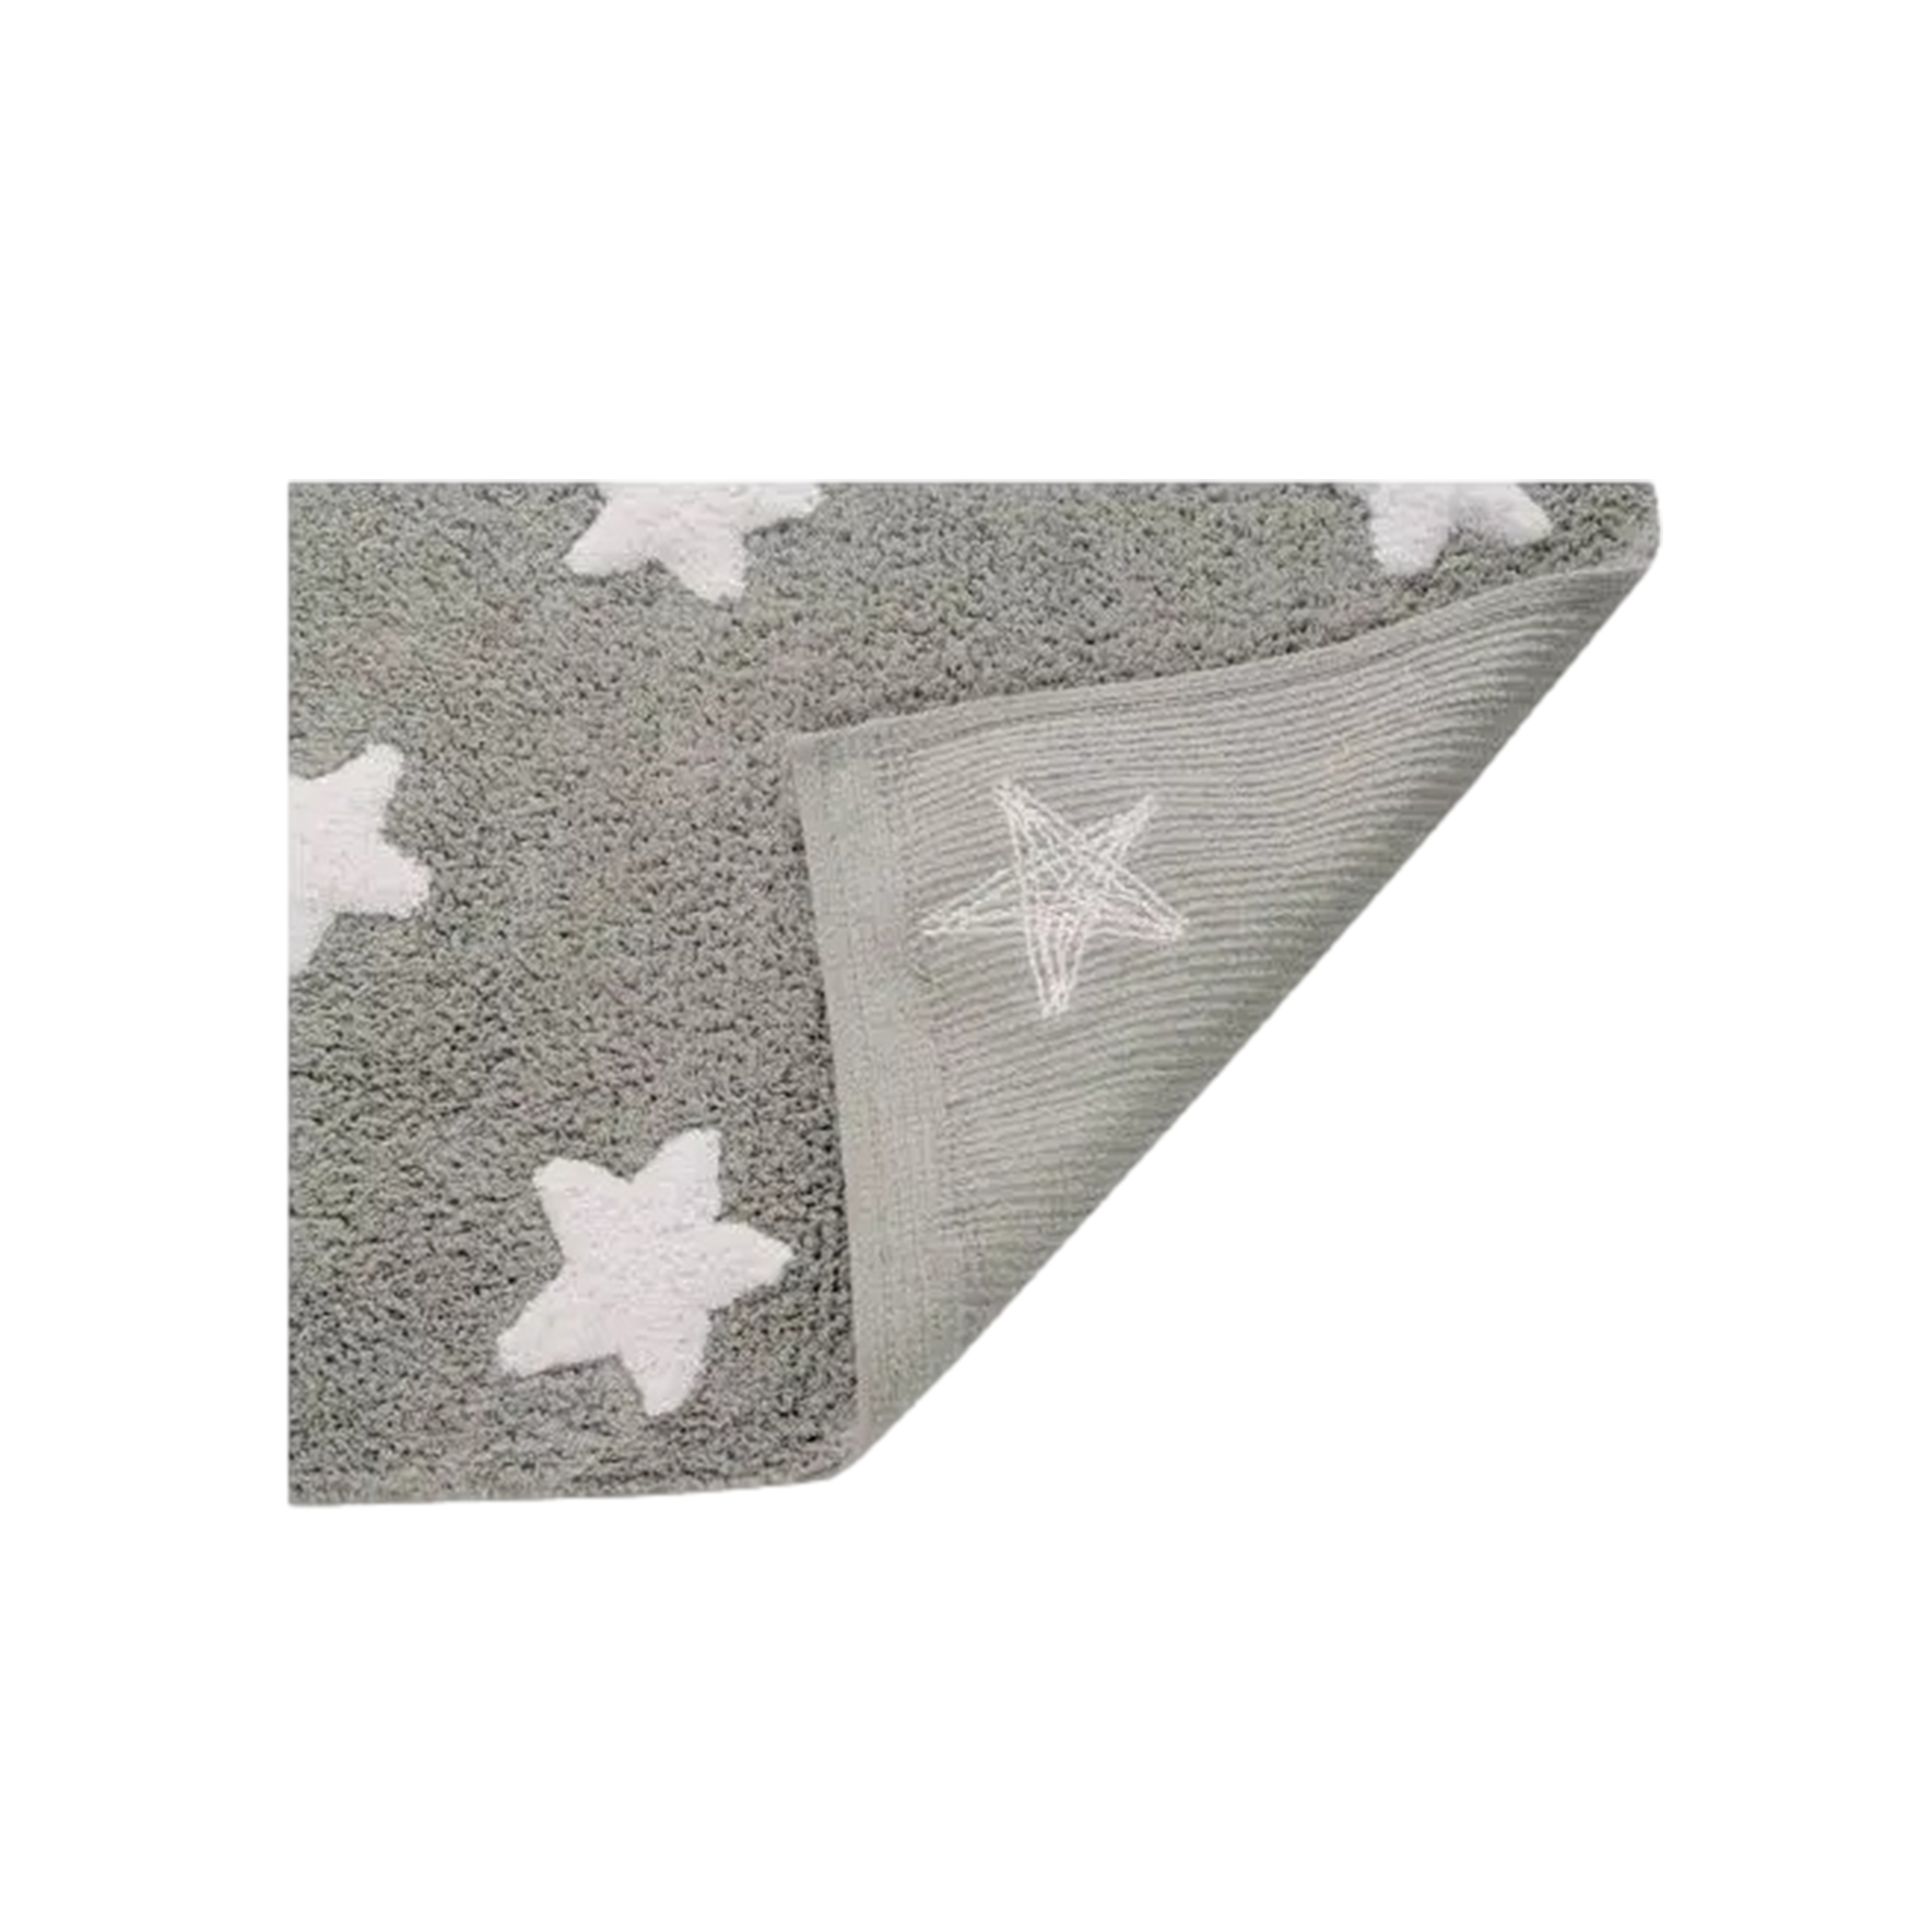 Stars Rug in Grey